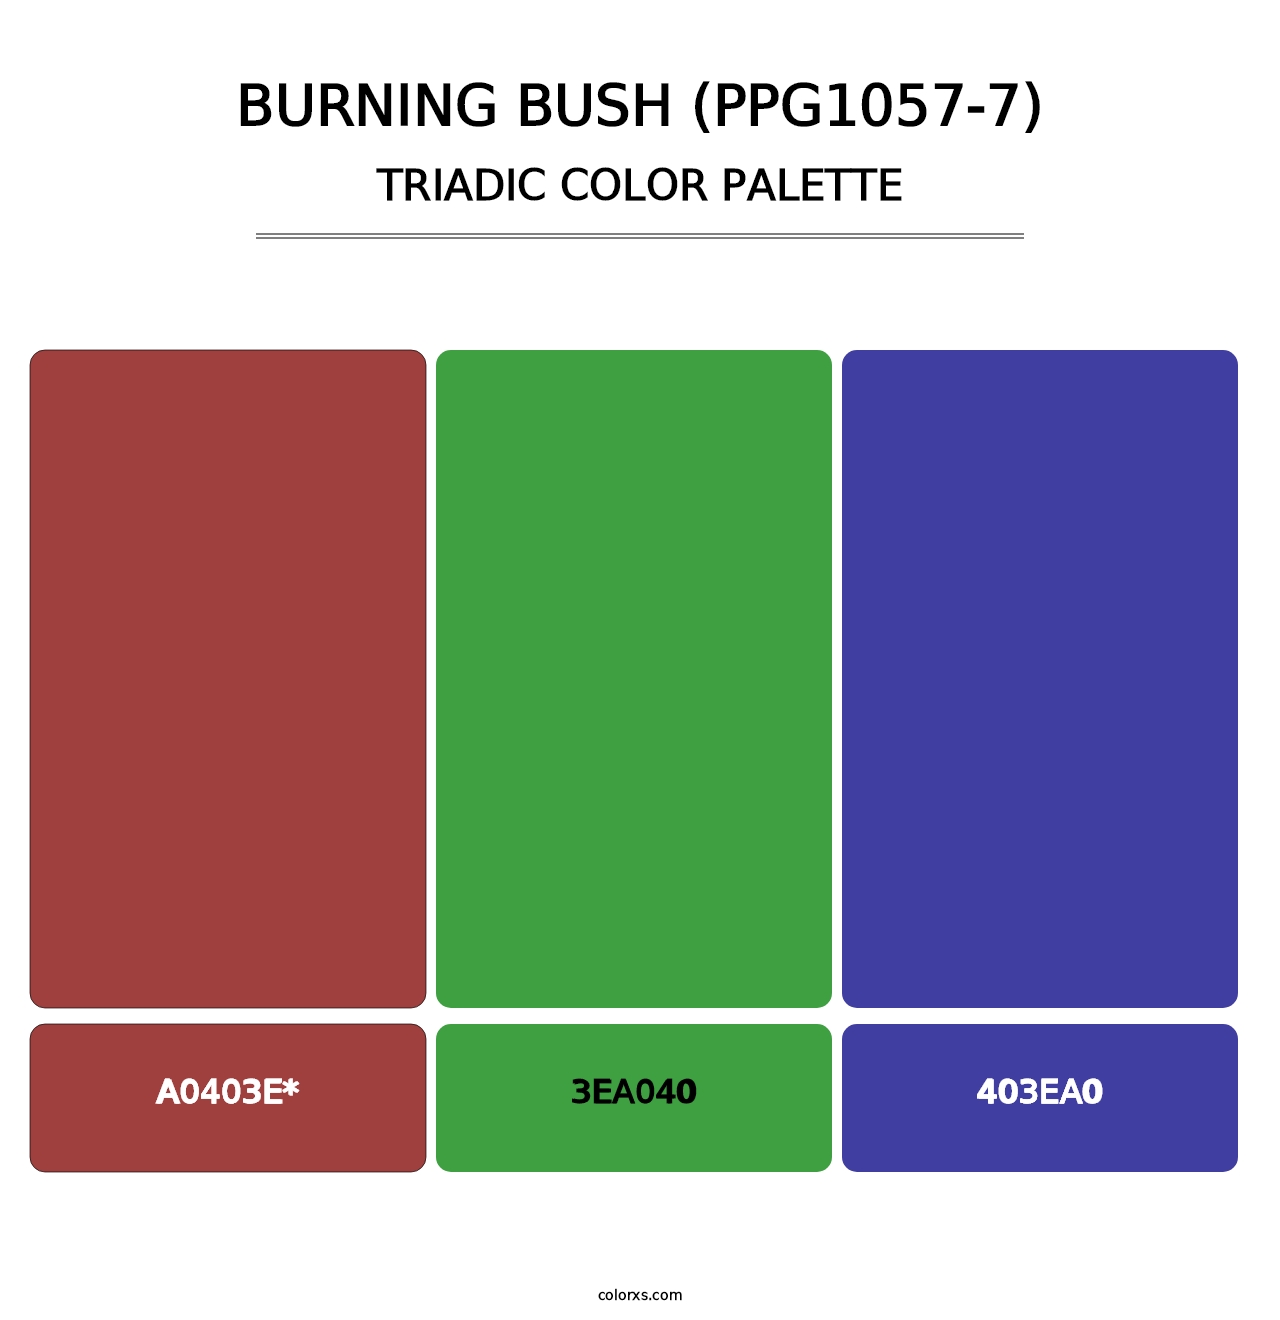 Burning Bush (PPG1057-7) - Triadic Color Palette